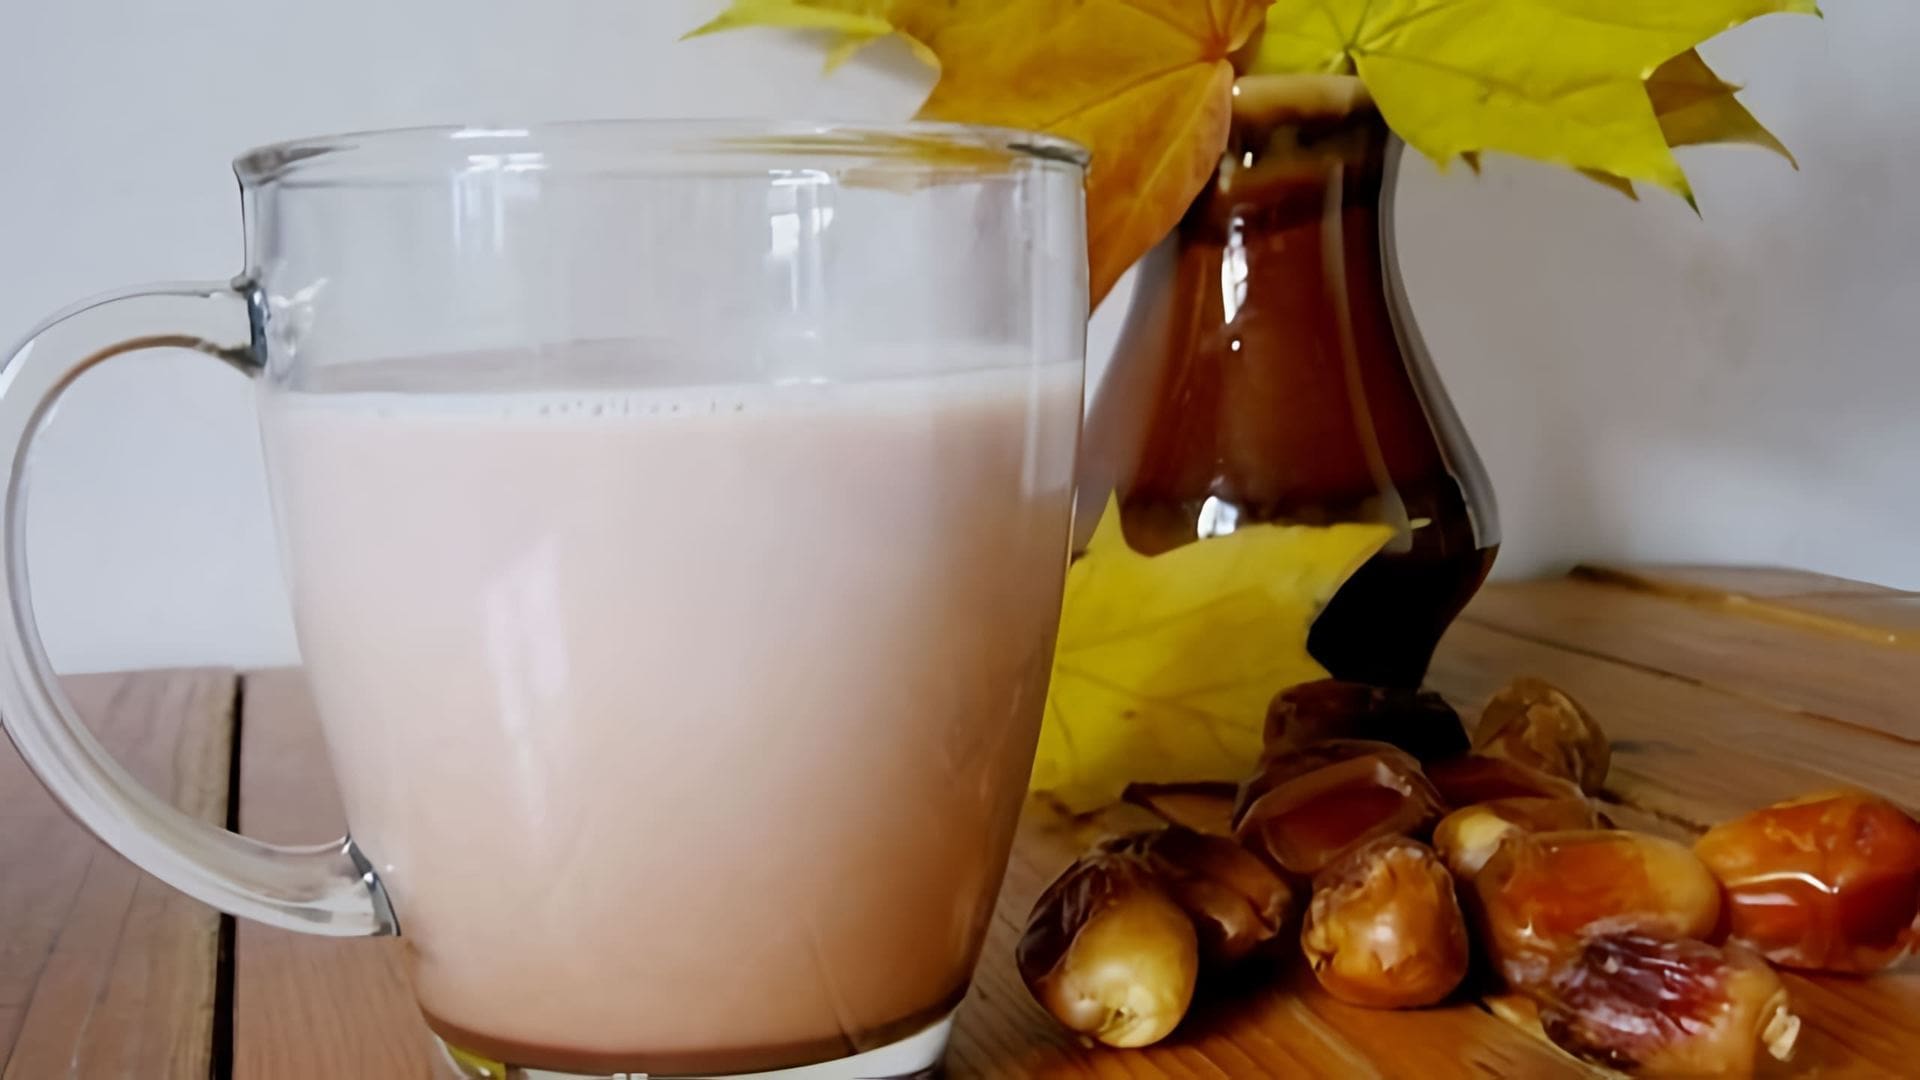 В этом видео демонстрируется процесс приготовления горячего бананово-шоколадного молочного коктейля